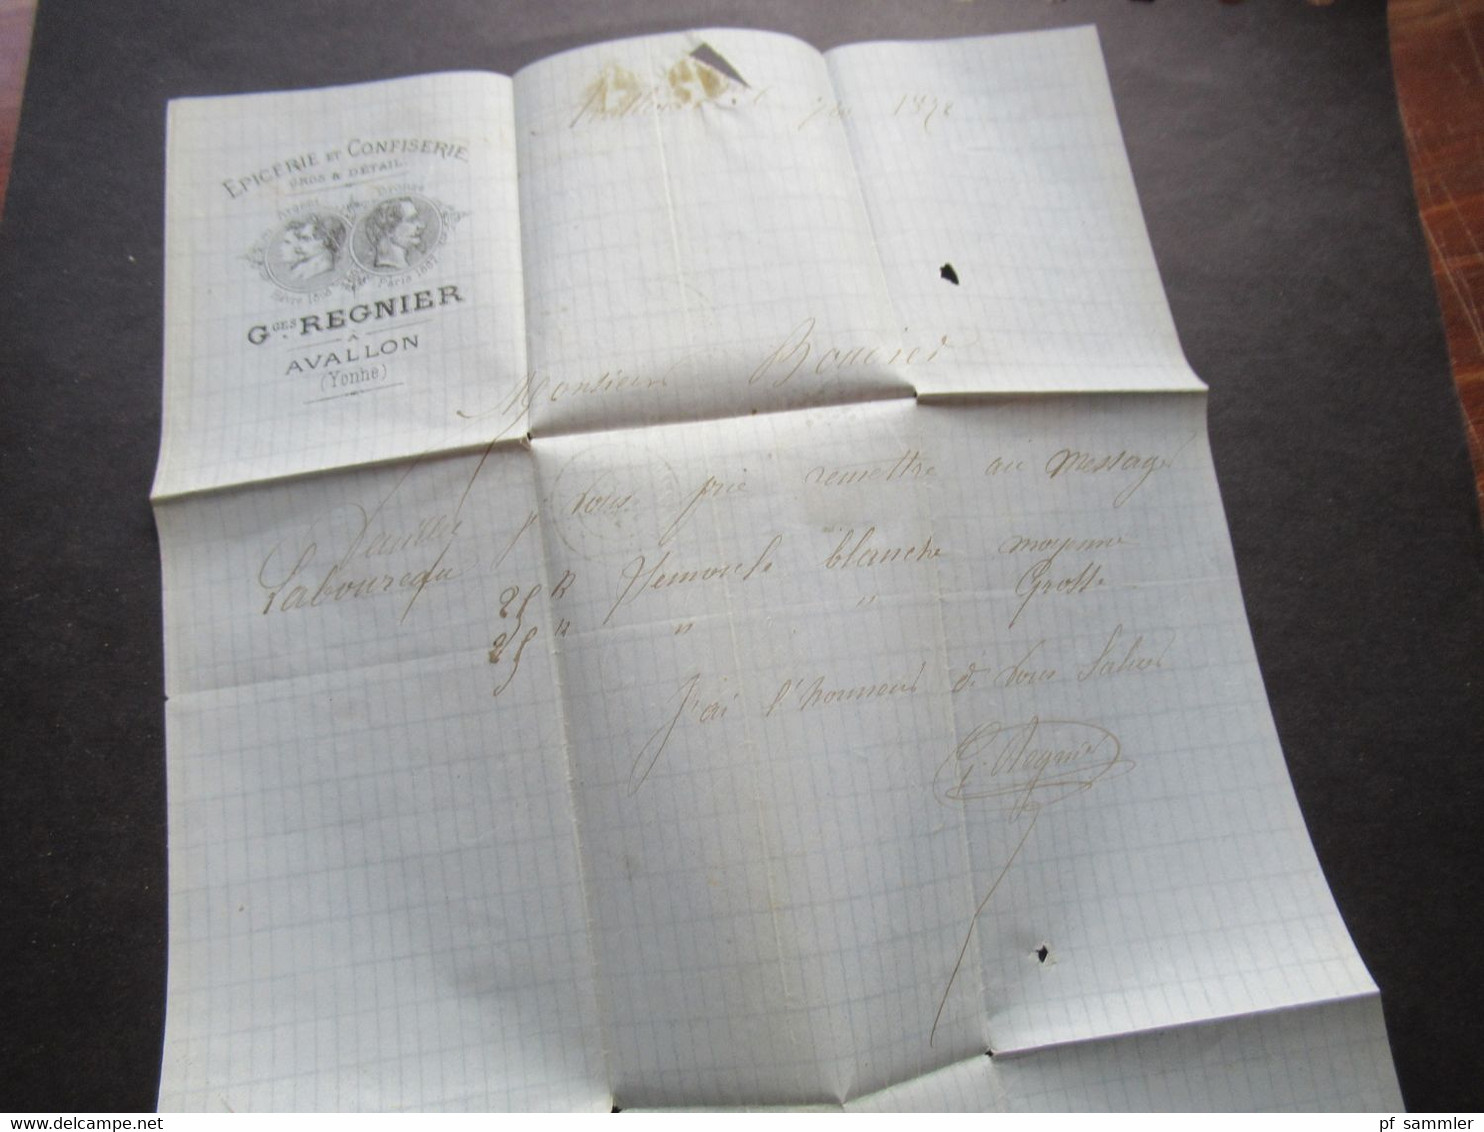 Frankreich 1872 Ceres Nr.51 EF Rauten Nummernstempel BP gedruckter Briefkopf Epicerie Ges Regnier Avallon Bahnpoststempe